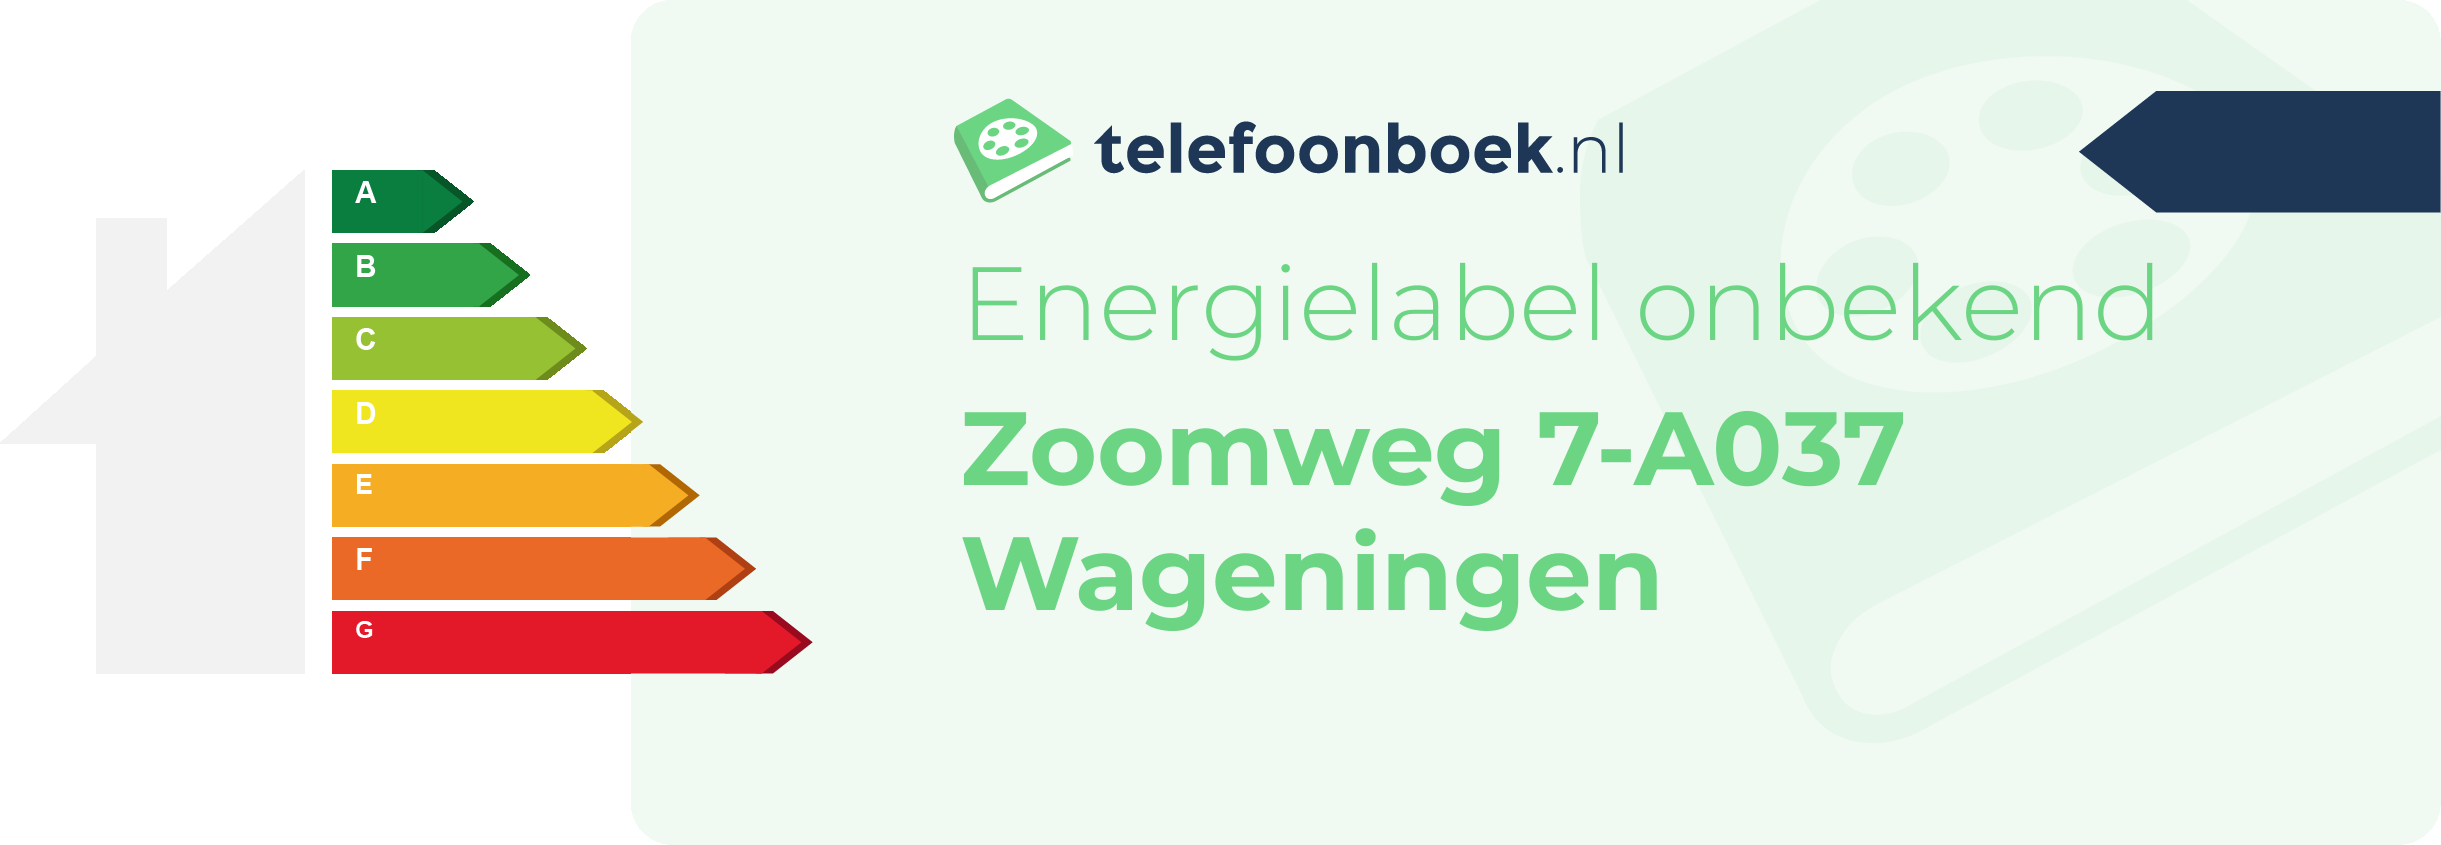 Energielabel Zoomweg 7-A037 Wageningen